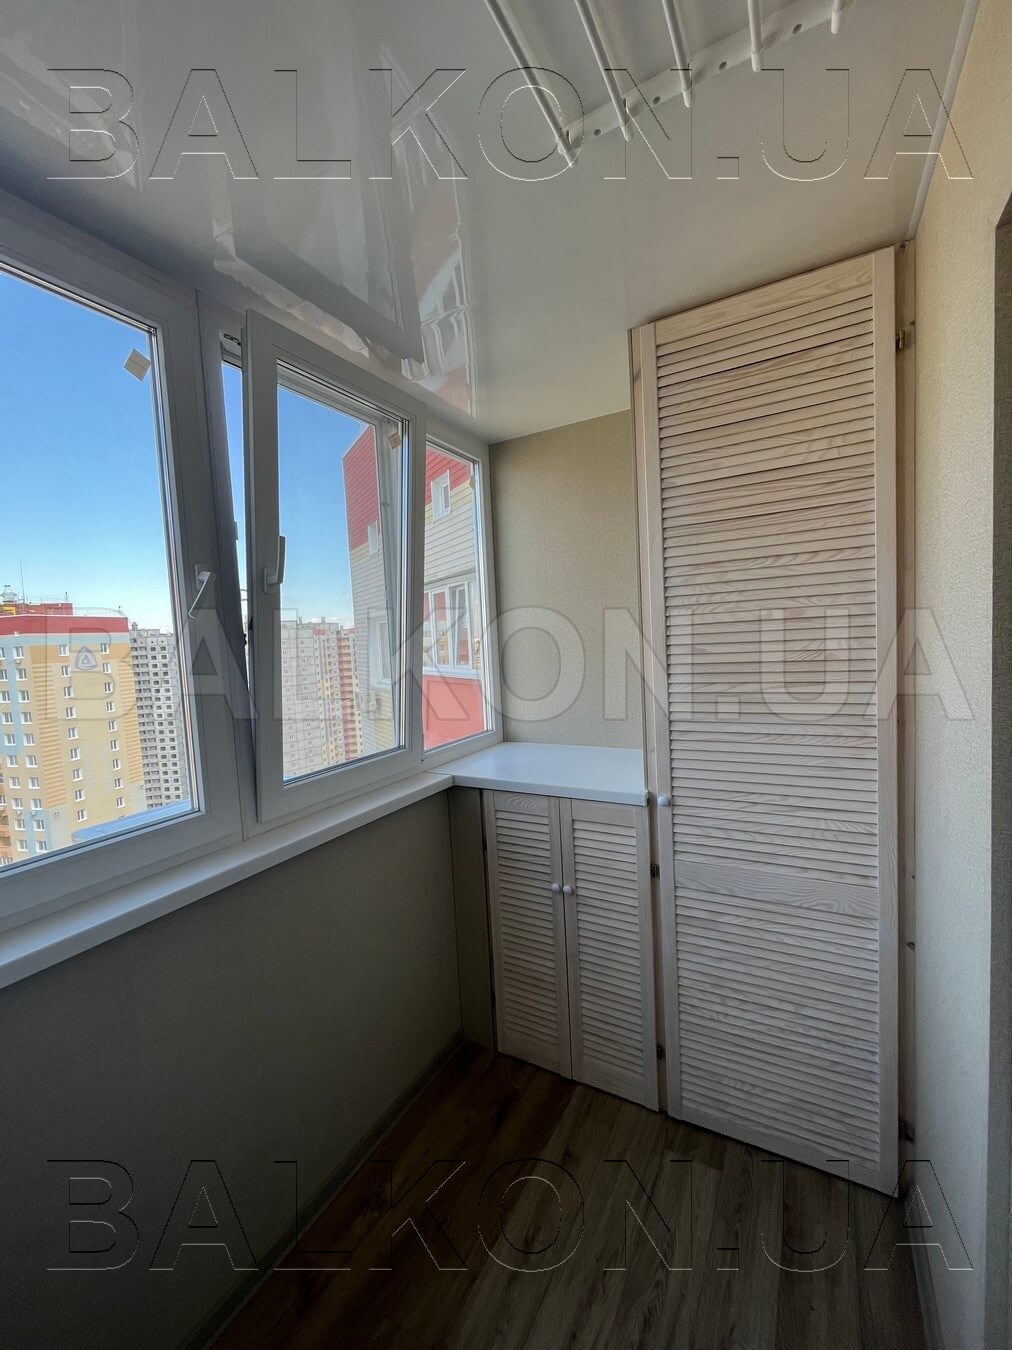 Внутренняя отделка балкона ламинированные панели. Киев, Конева 5г 06